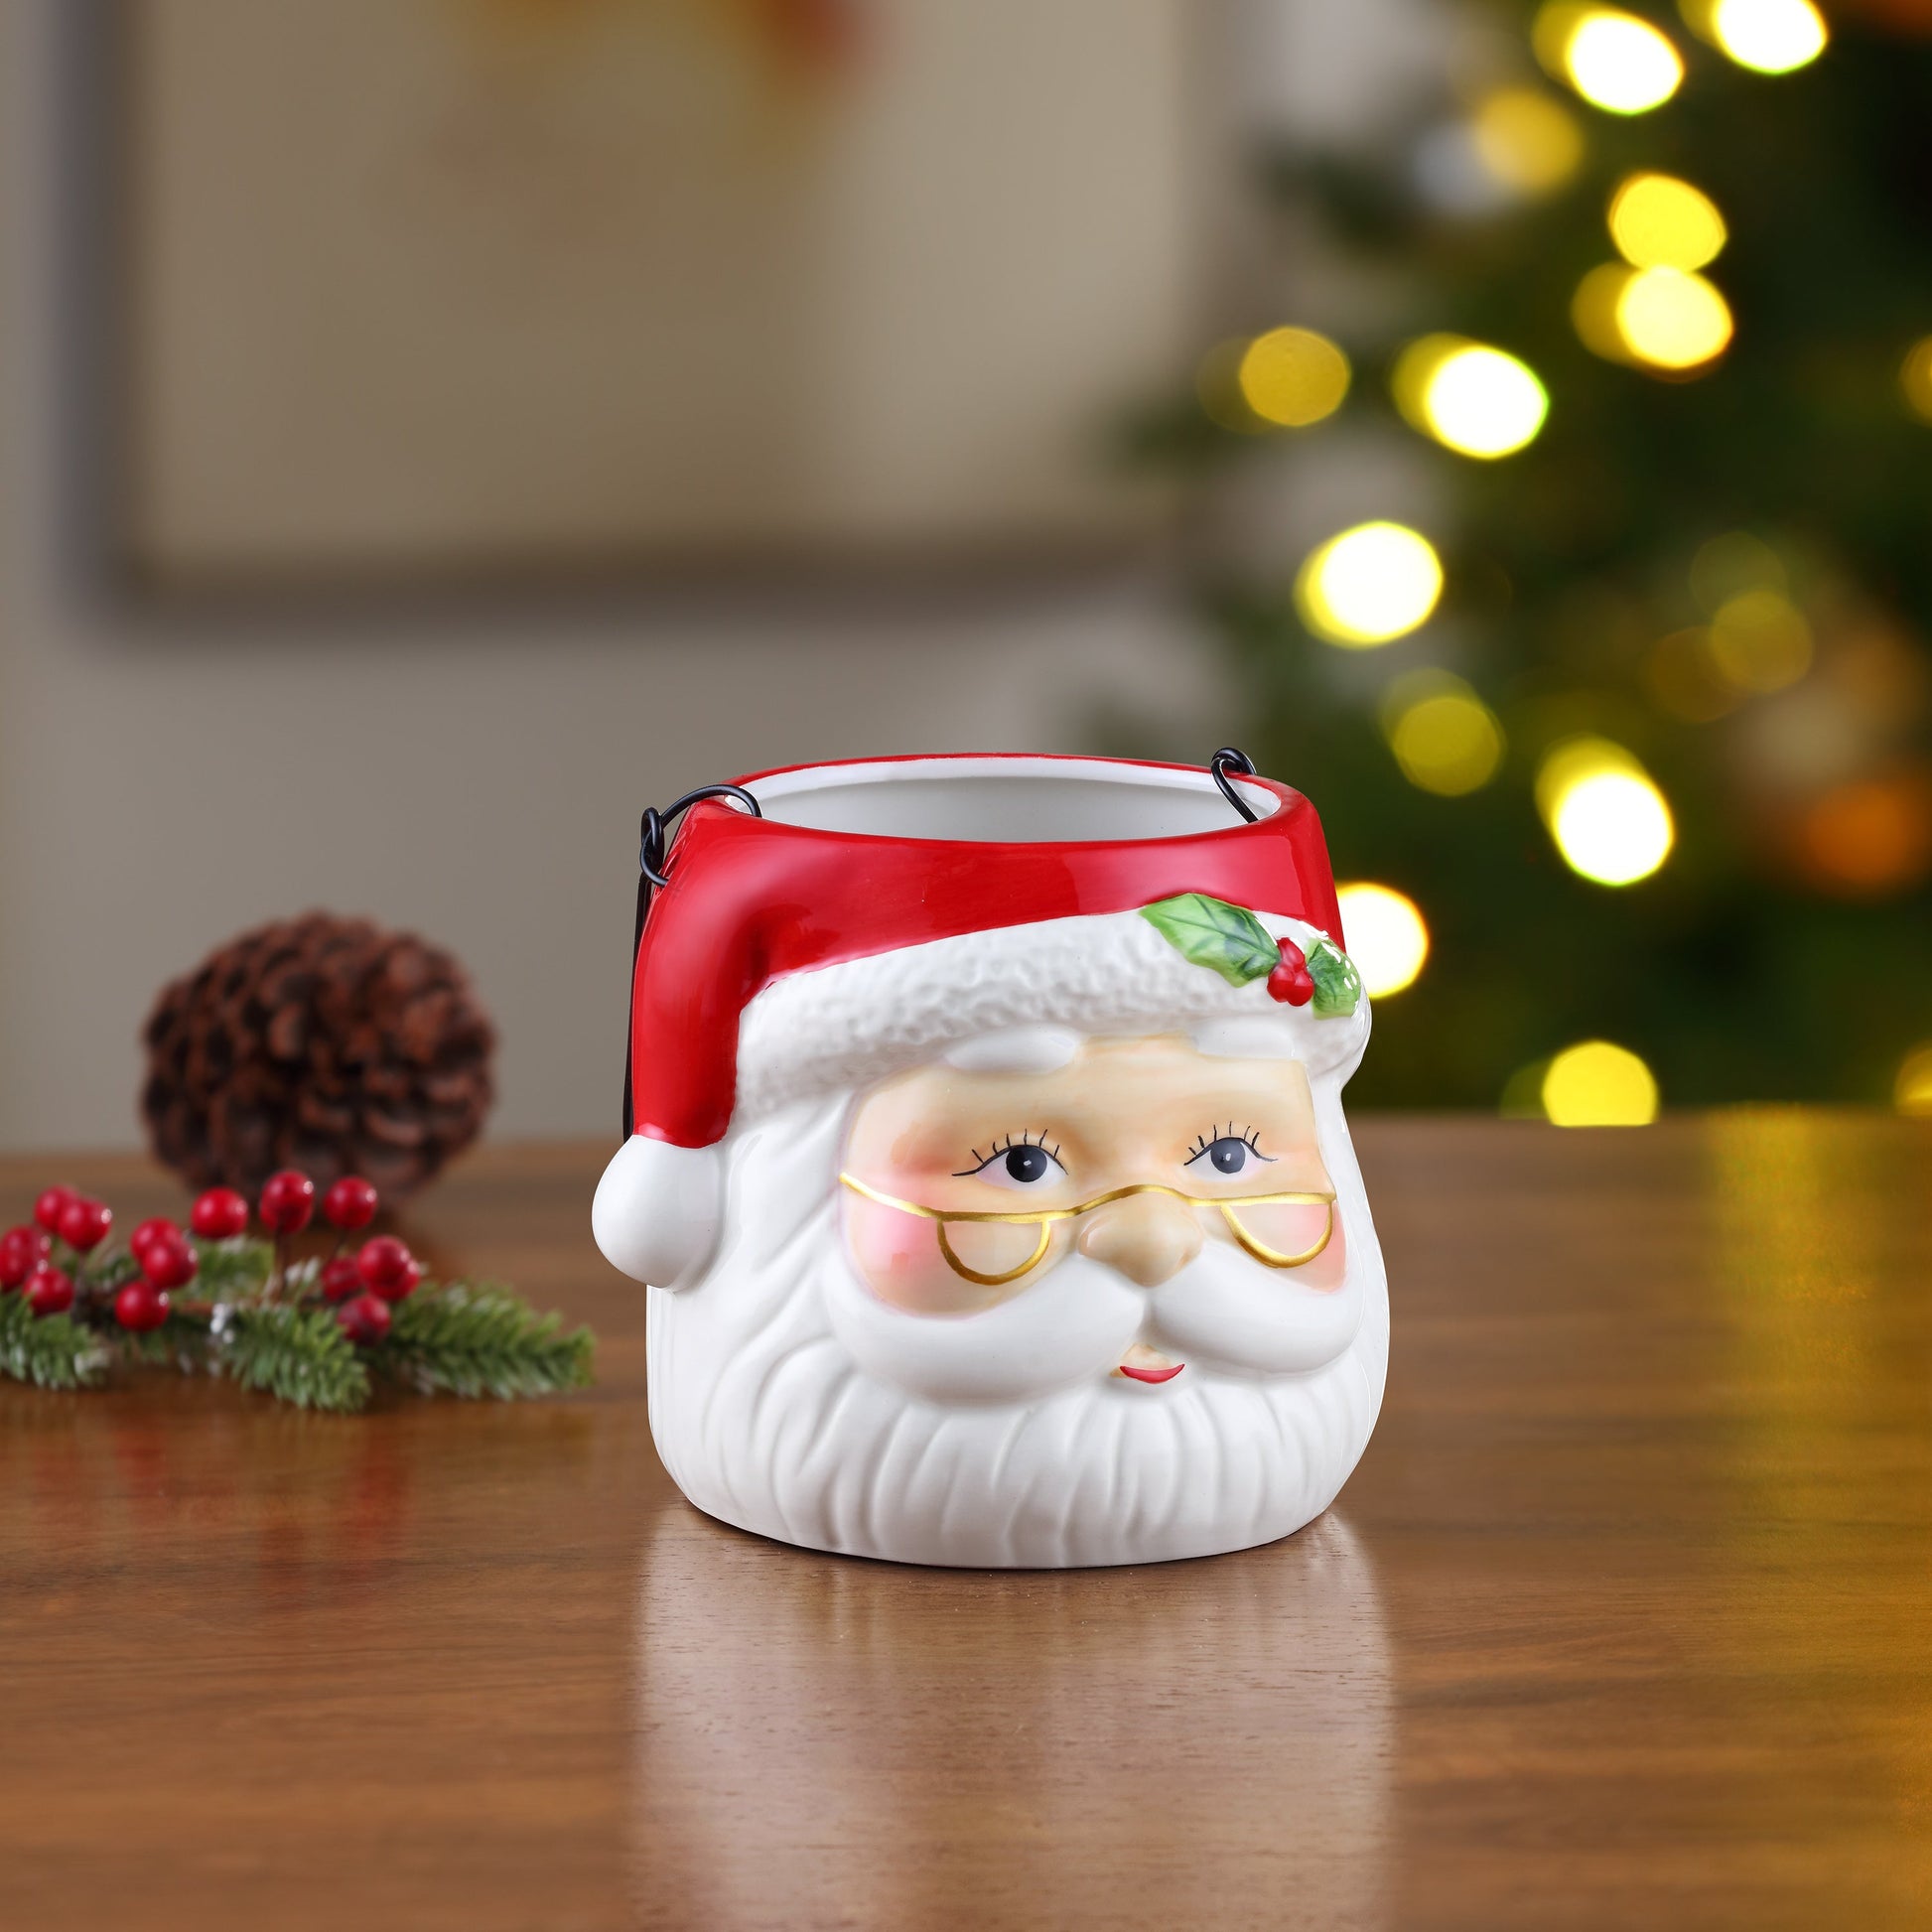 5" Nostalgic Ceramic Container - Santa Claus - Mr. Christmas